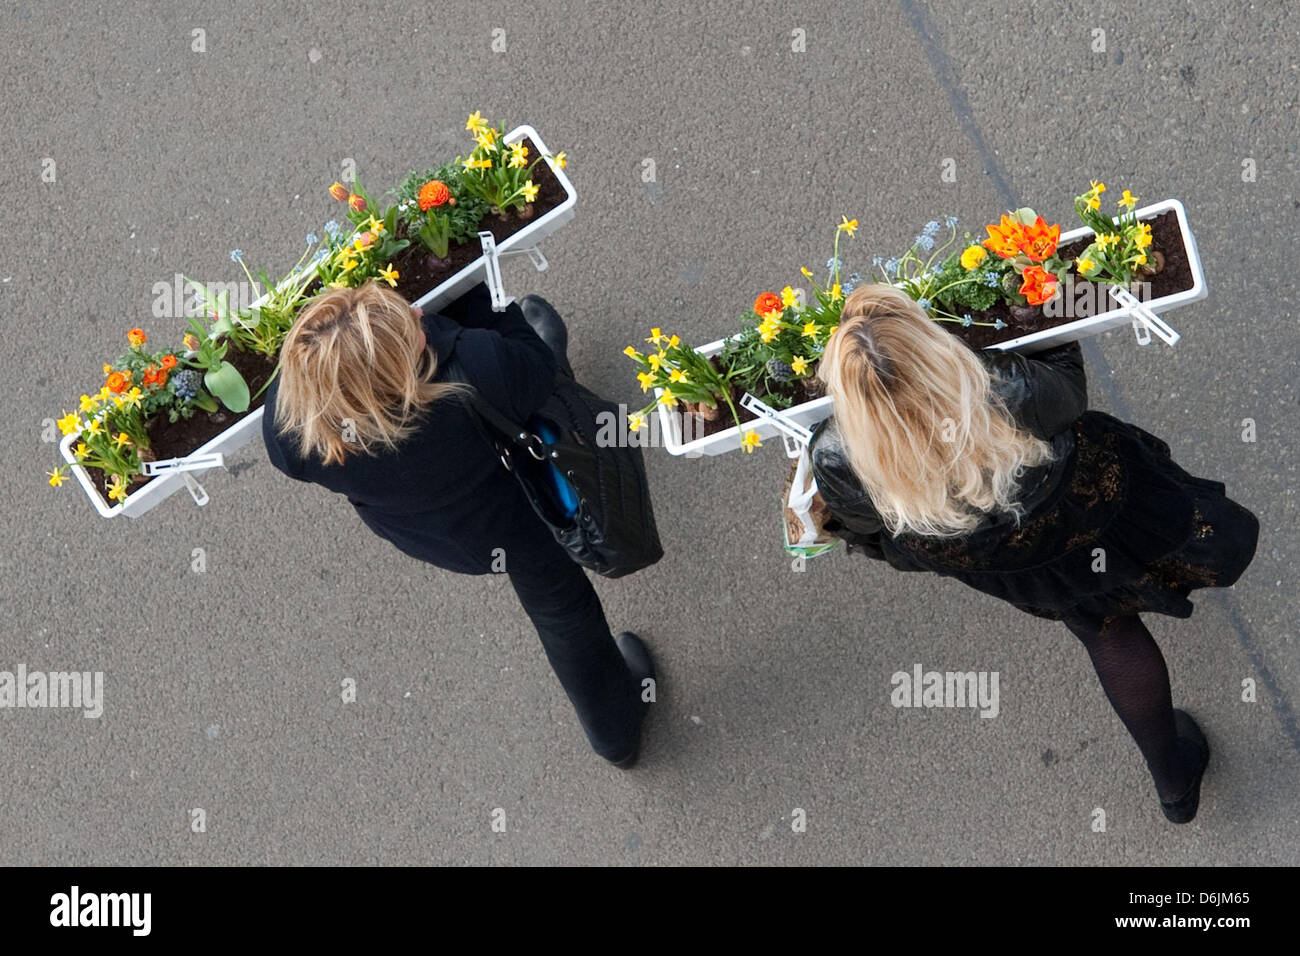 Due donne portano lontano fioriere riempito con colorati fiori di primavera che hanno ricevuto come presente da un garage per il parcheggio a Berlino, Germania, 20 marzo 2012. Più di 200 fioriere sono state date a passanti per creare fassades colorate e balconi a Berlino. Foto: Robert Schlesinger Foto Stock